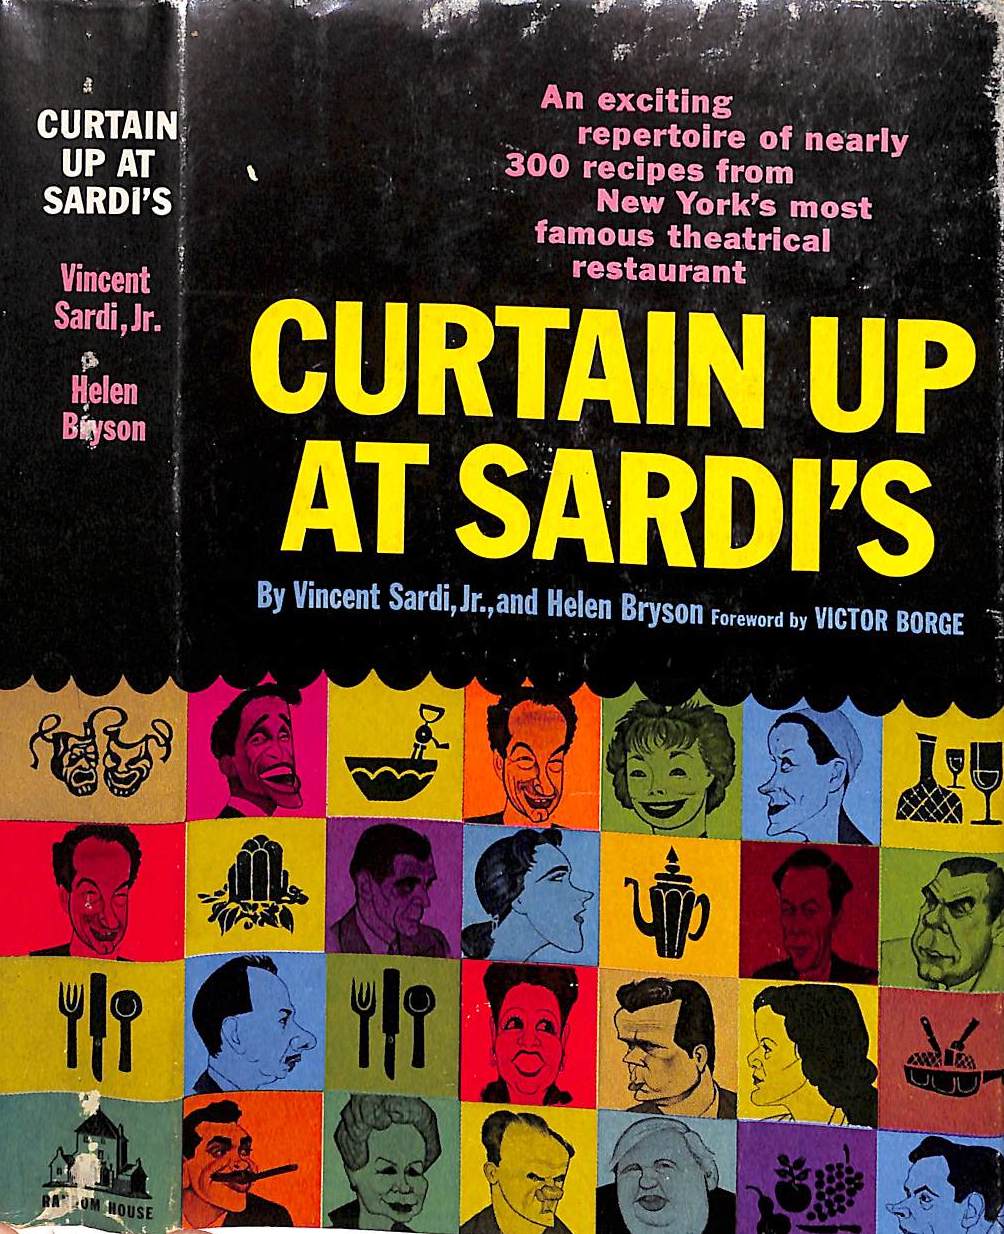 "Curtain Up At Sardi's" 1957 SARDI, Vincent Jr. and BRYSON, Helen